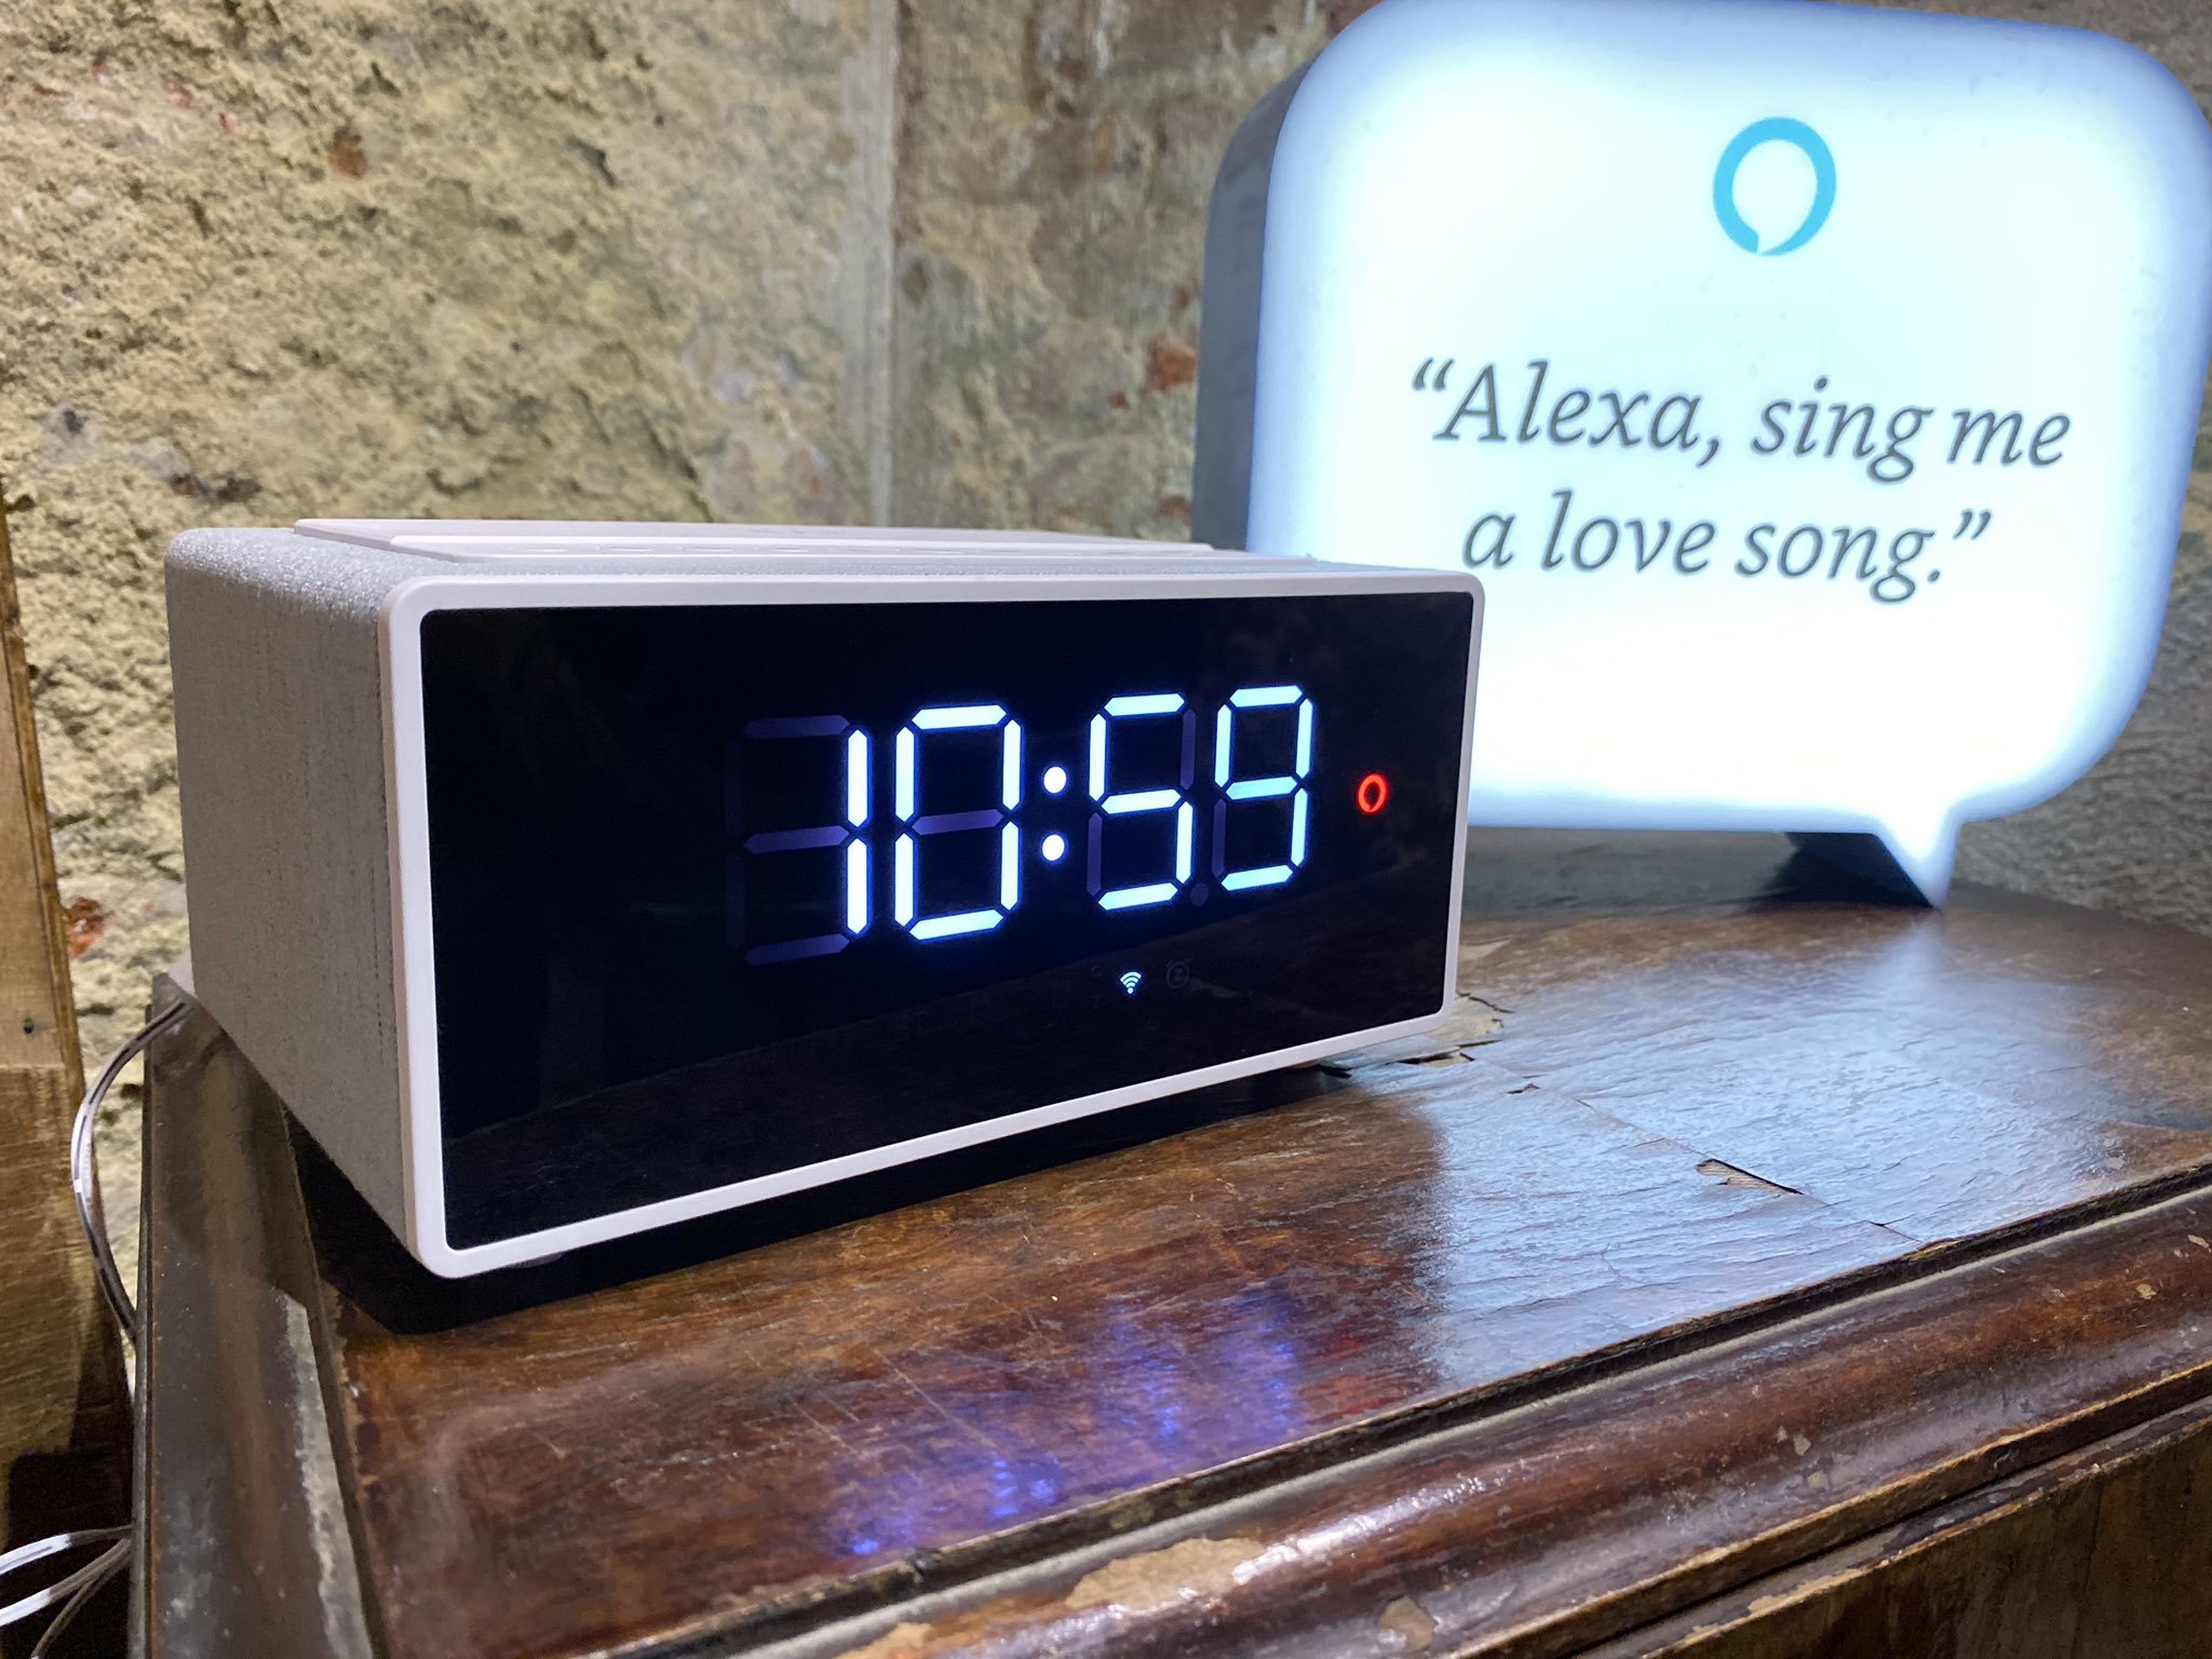 Incluir Alexa en tu despertador por solo 54,99 euros es una